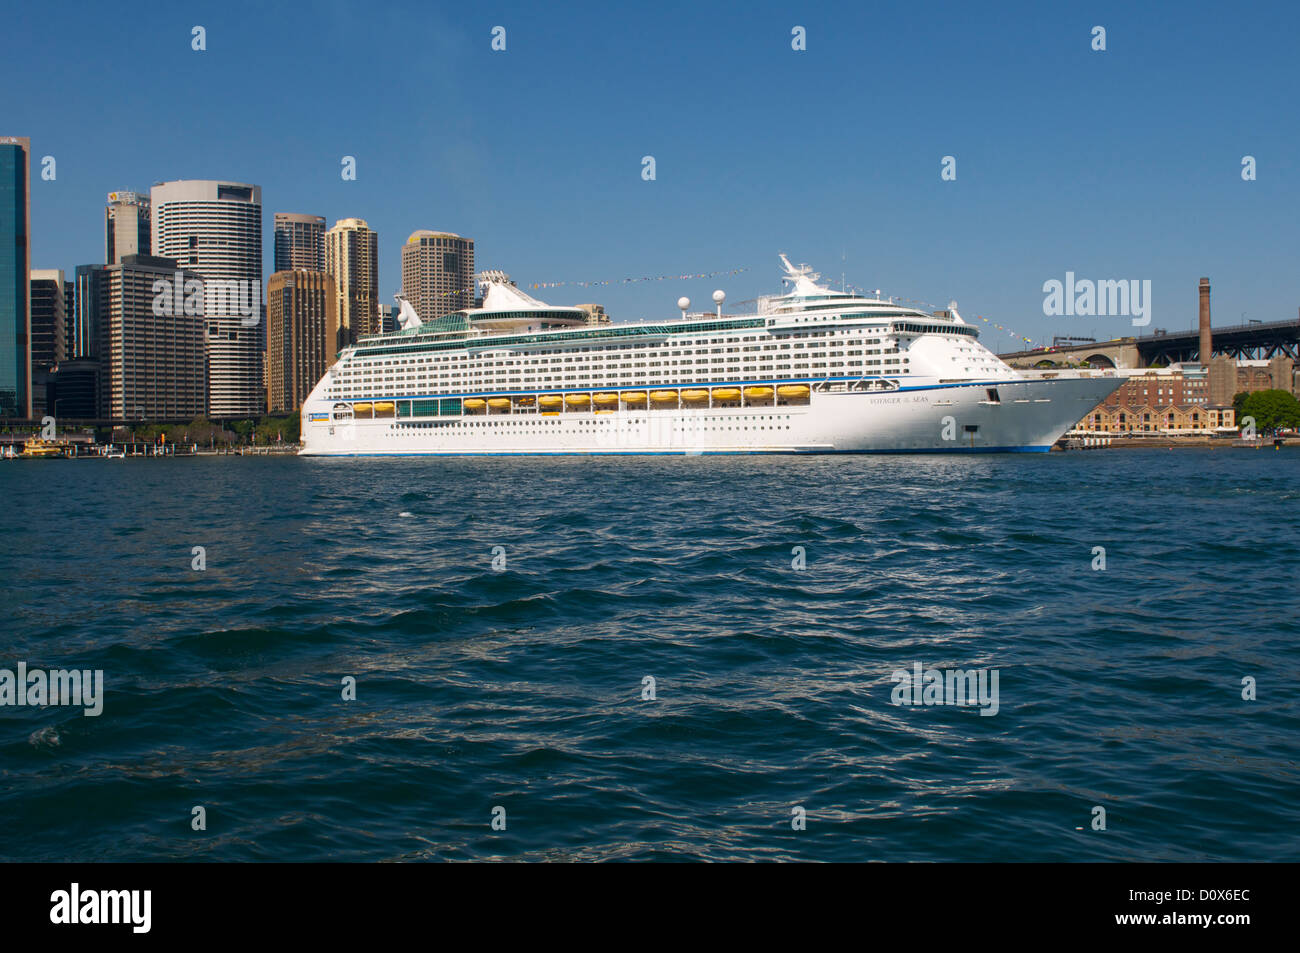 Un paquebot de croisière "Voyager of the Seas" à quai à Circular Quay Sydney Australie Banque D'Images